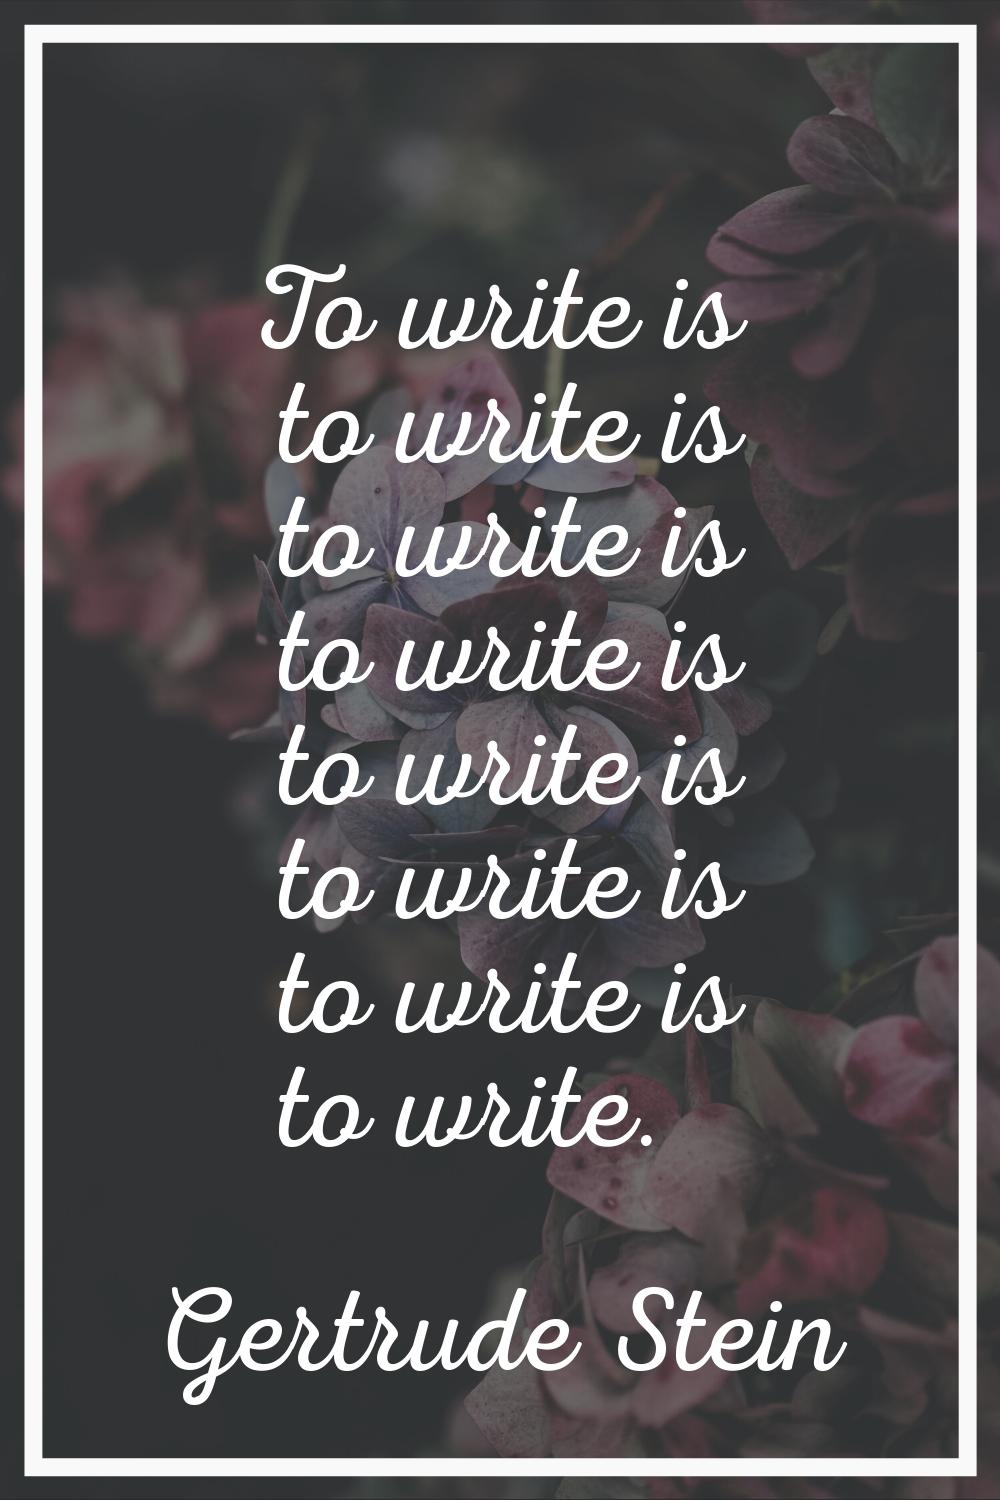 To write is to write is to write is to write is to write is to write is to write is to write.